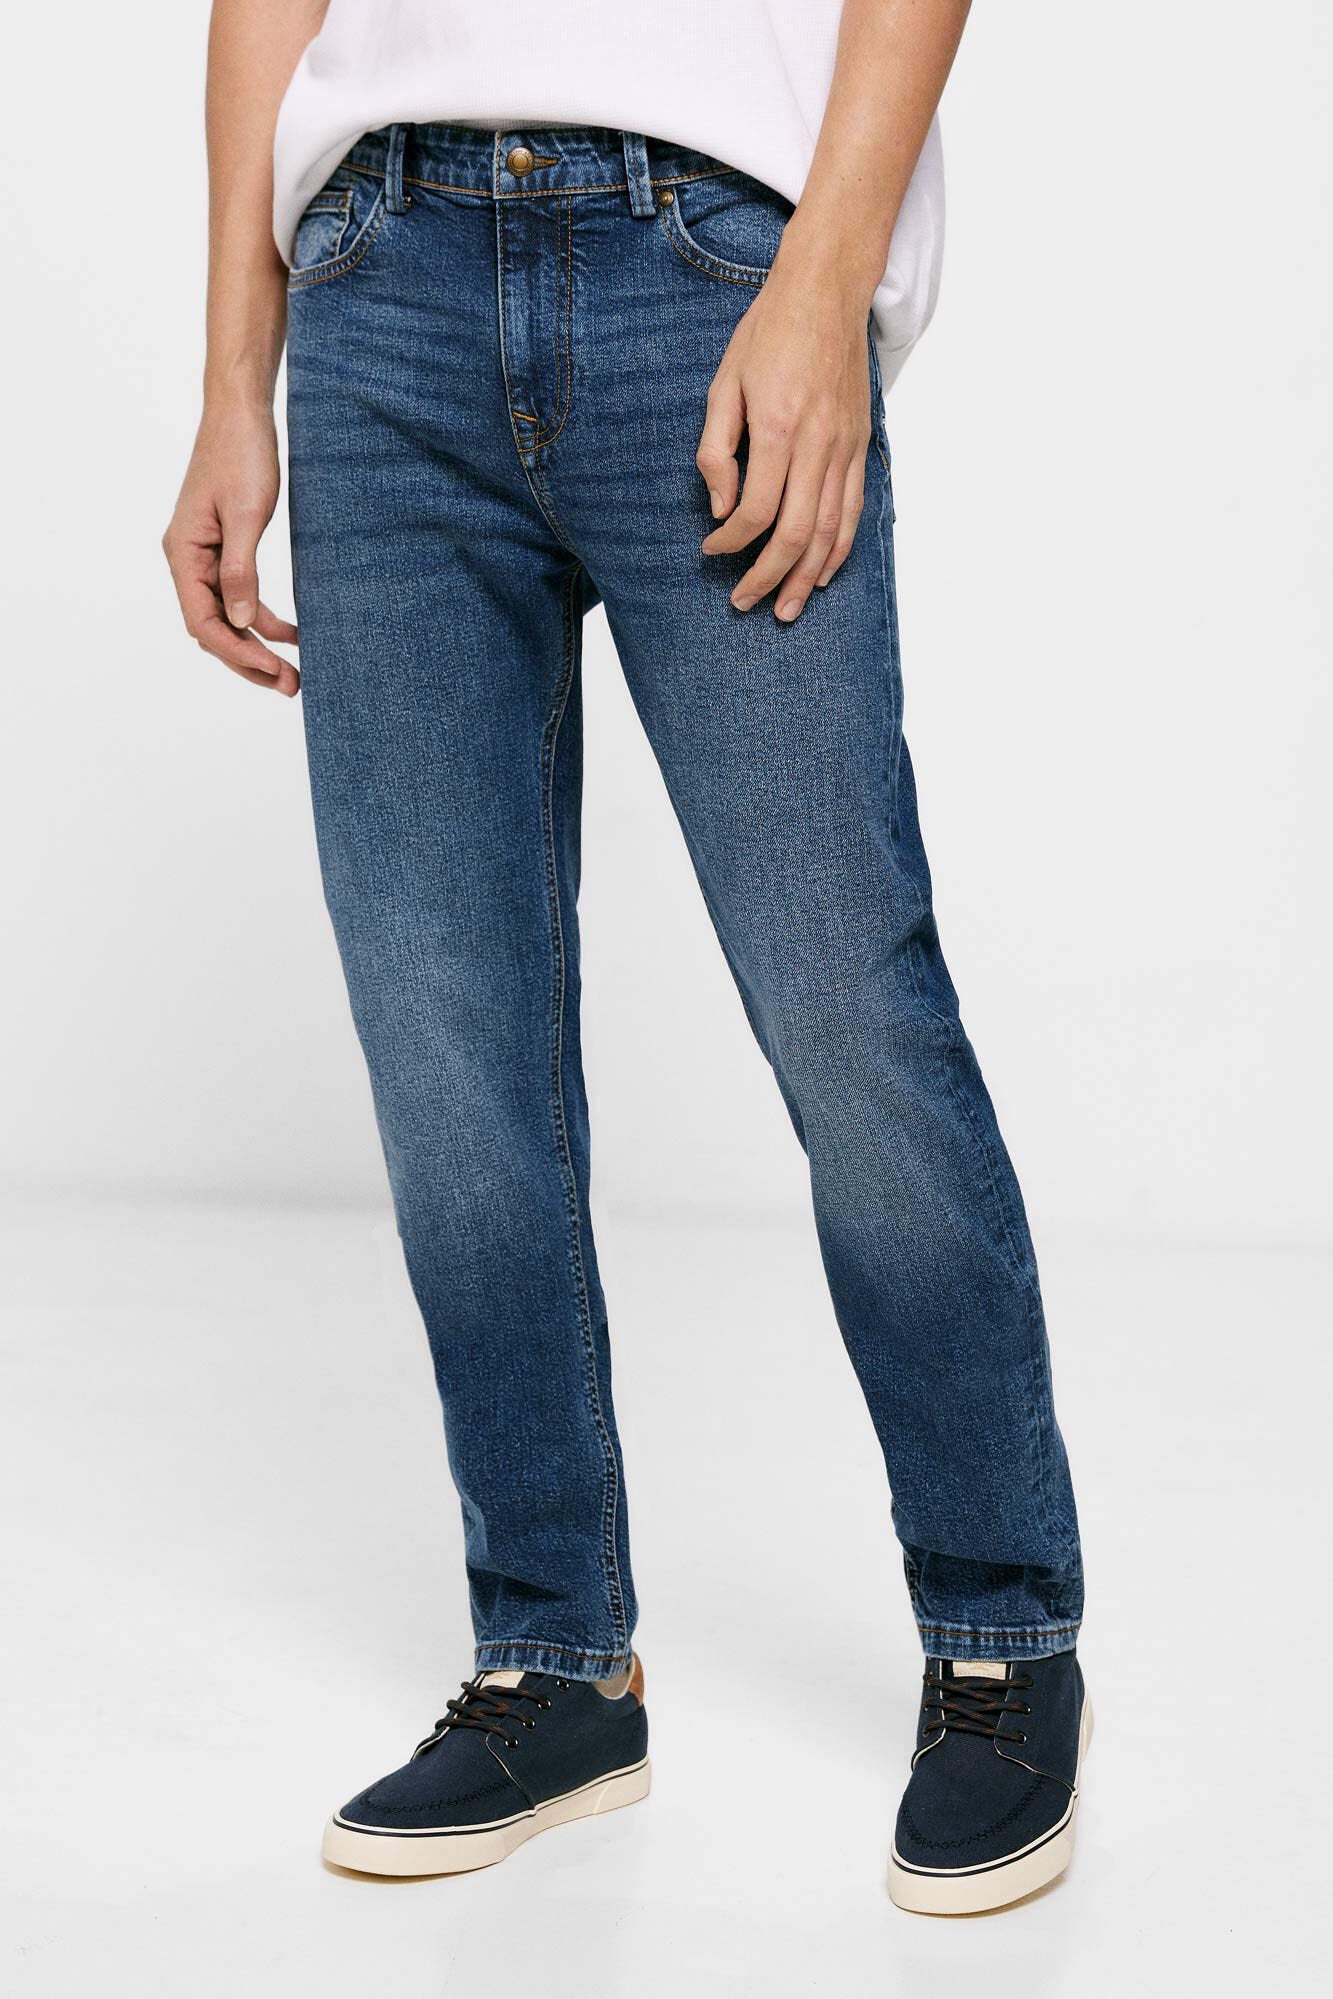 Medium Wash Slim Fit Jeans_1757525_11_04